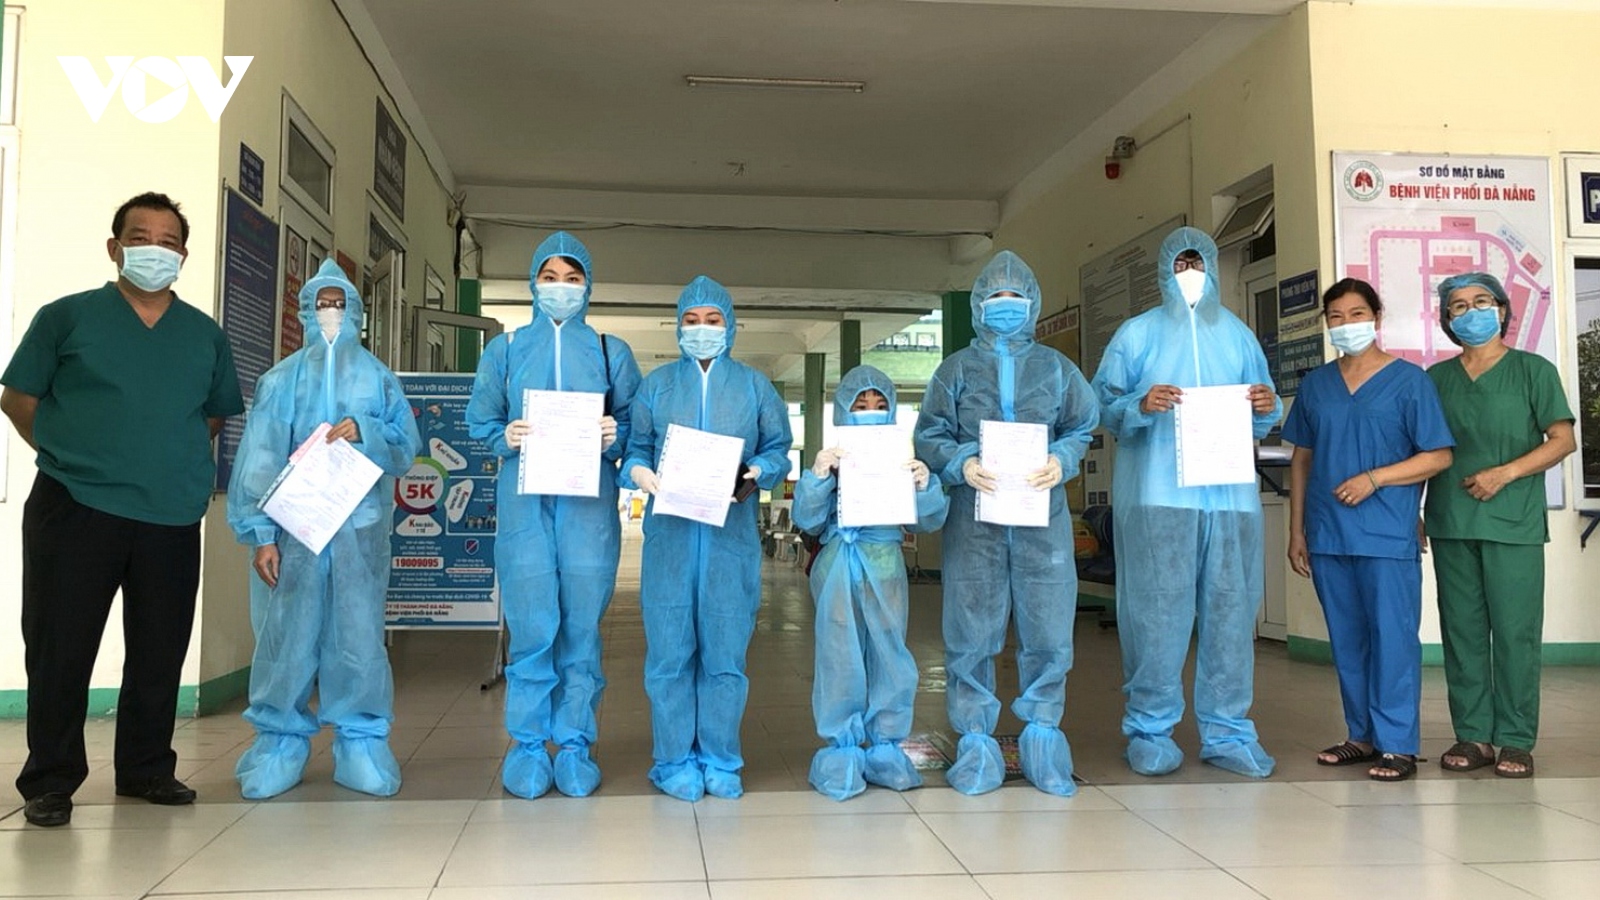 Thêm 6 trường hợp bệnh nhân tại Đà Nẵng khỏi Covid-19 được xuất viện